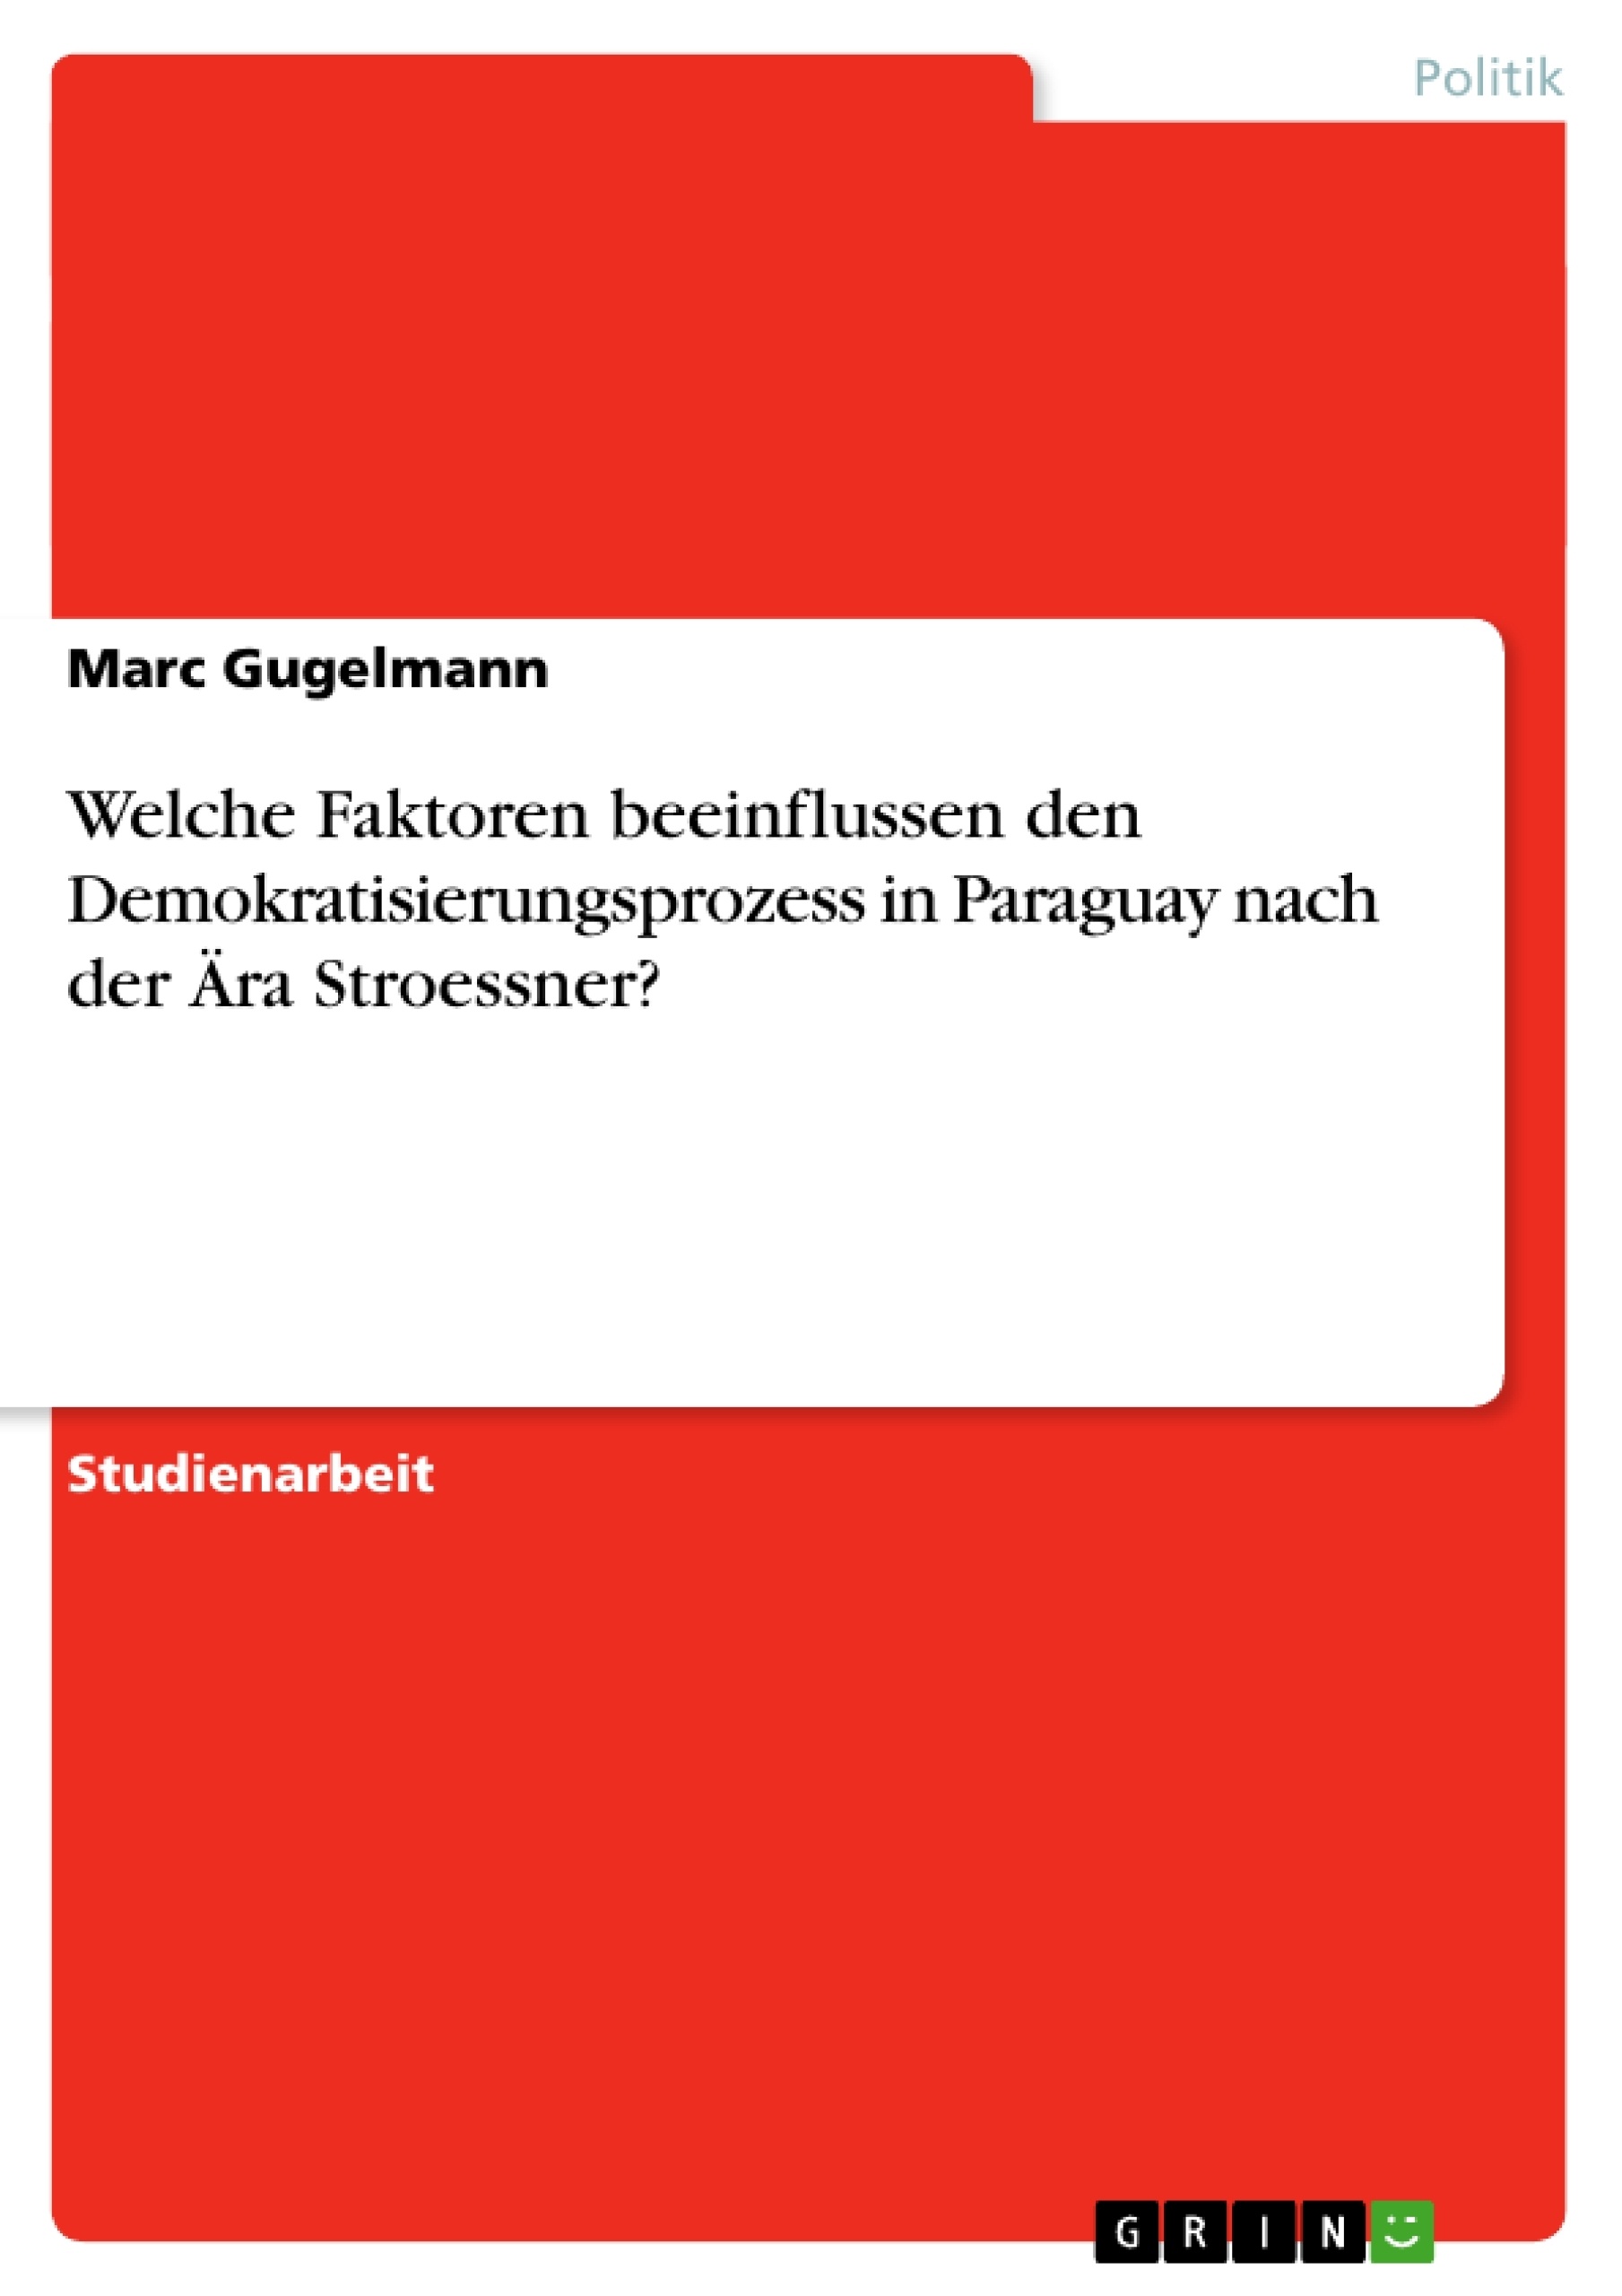 Titre: Welche Faktoren beeinflussen den Demokratisierungsprozess in Paraguay nach der Ära Stroessner?